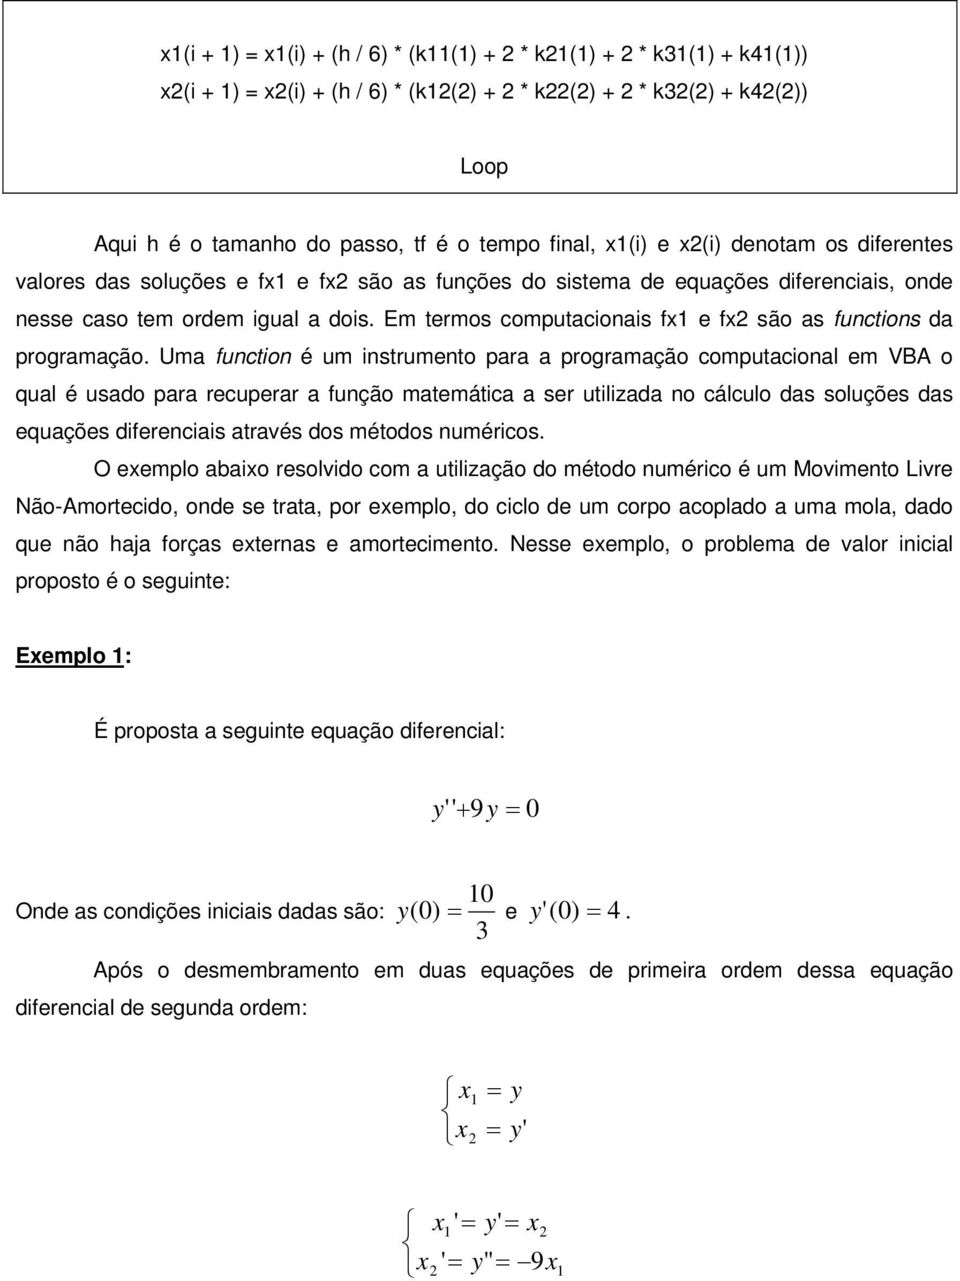 Uma function é um instrumento para a programação computacional em VBA o qual é usado para recuperar a função matemática a ser utilizada no cálculo das soluções das equações diferenciais através dos